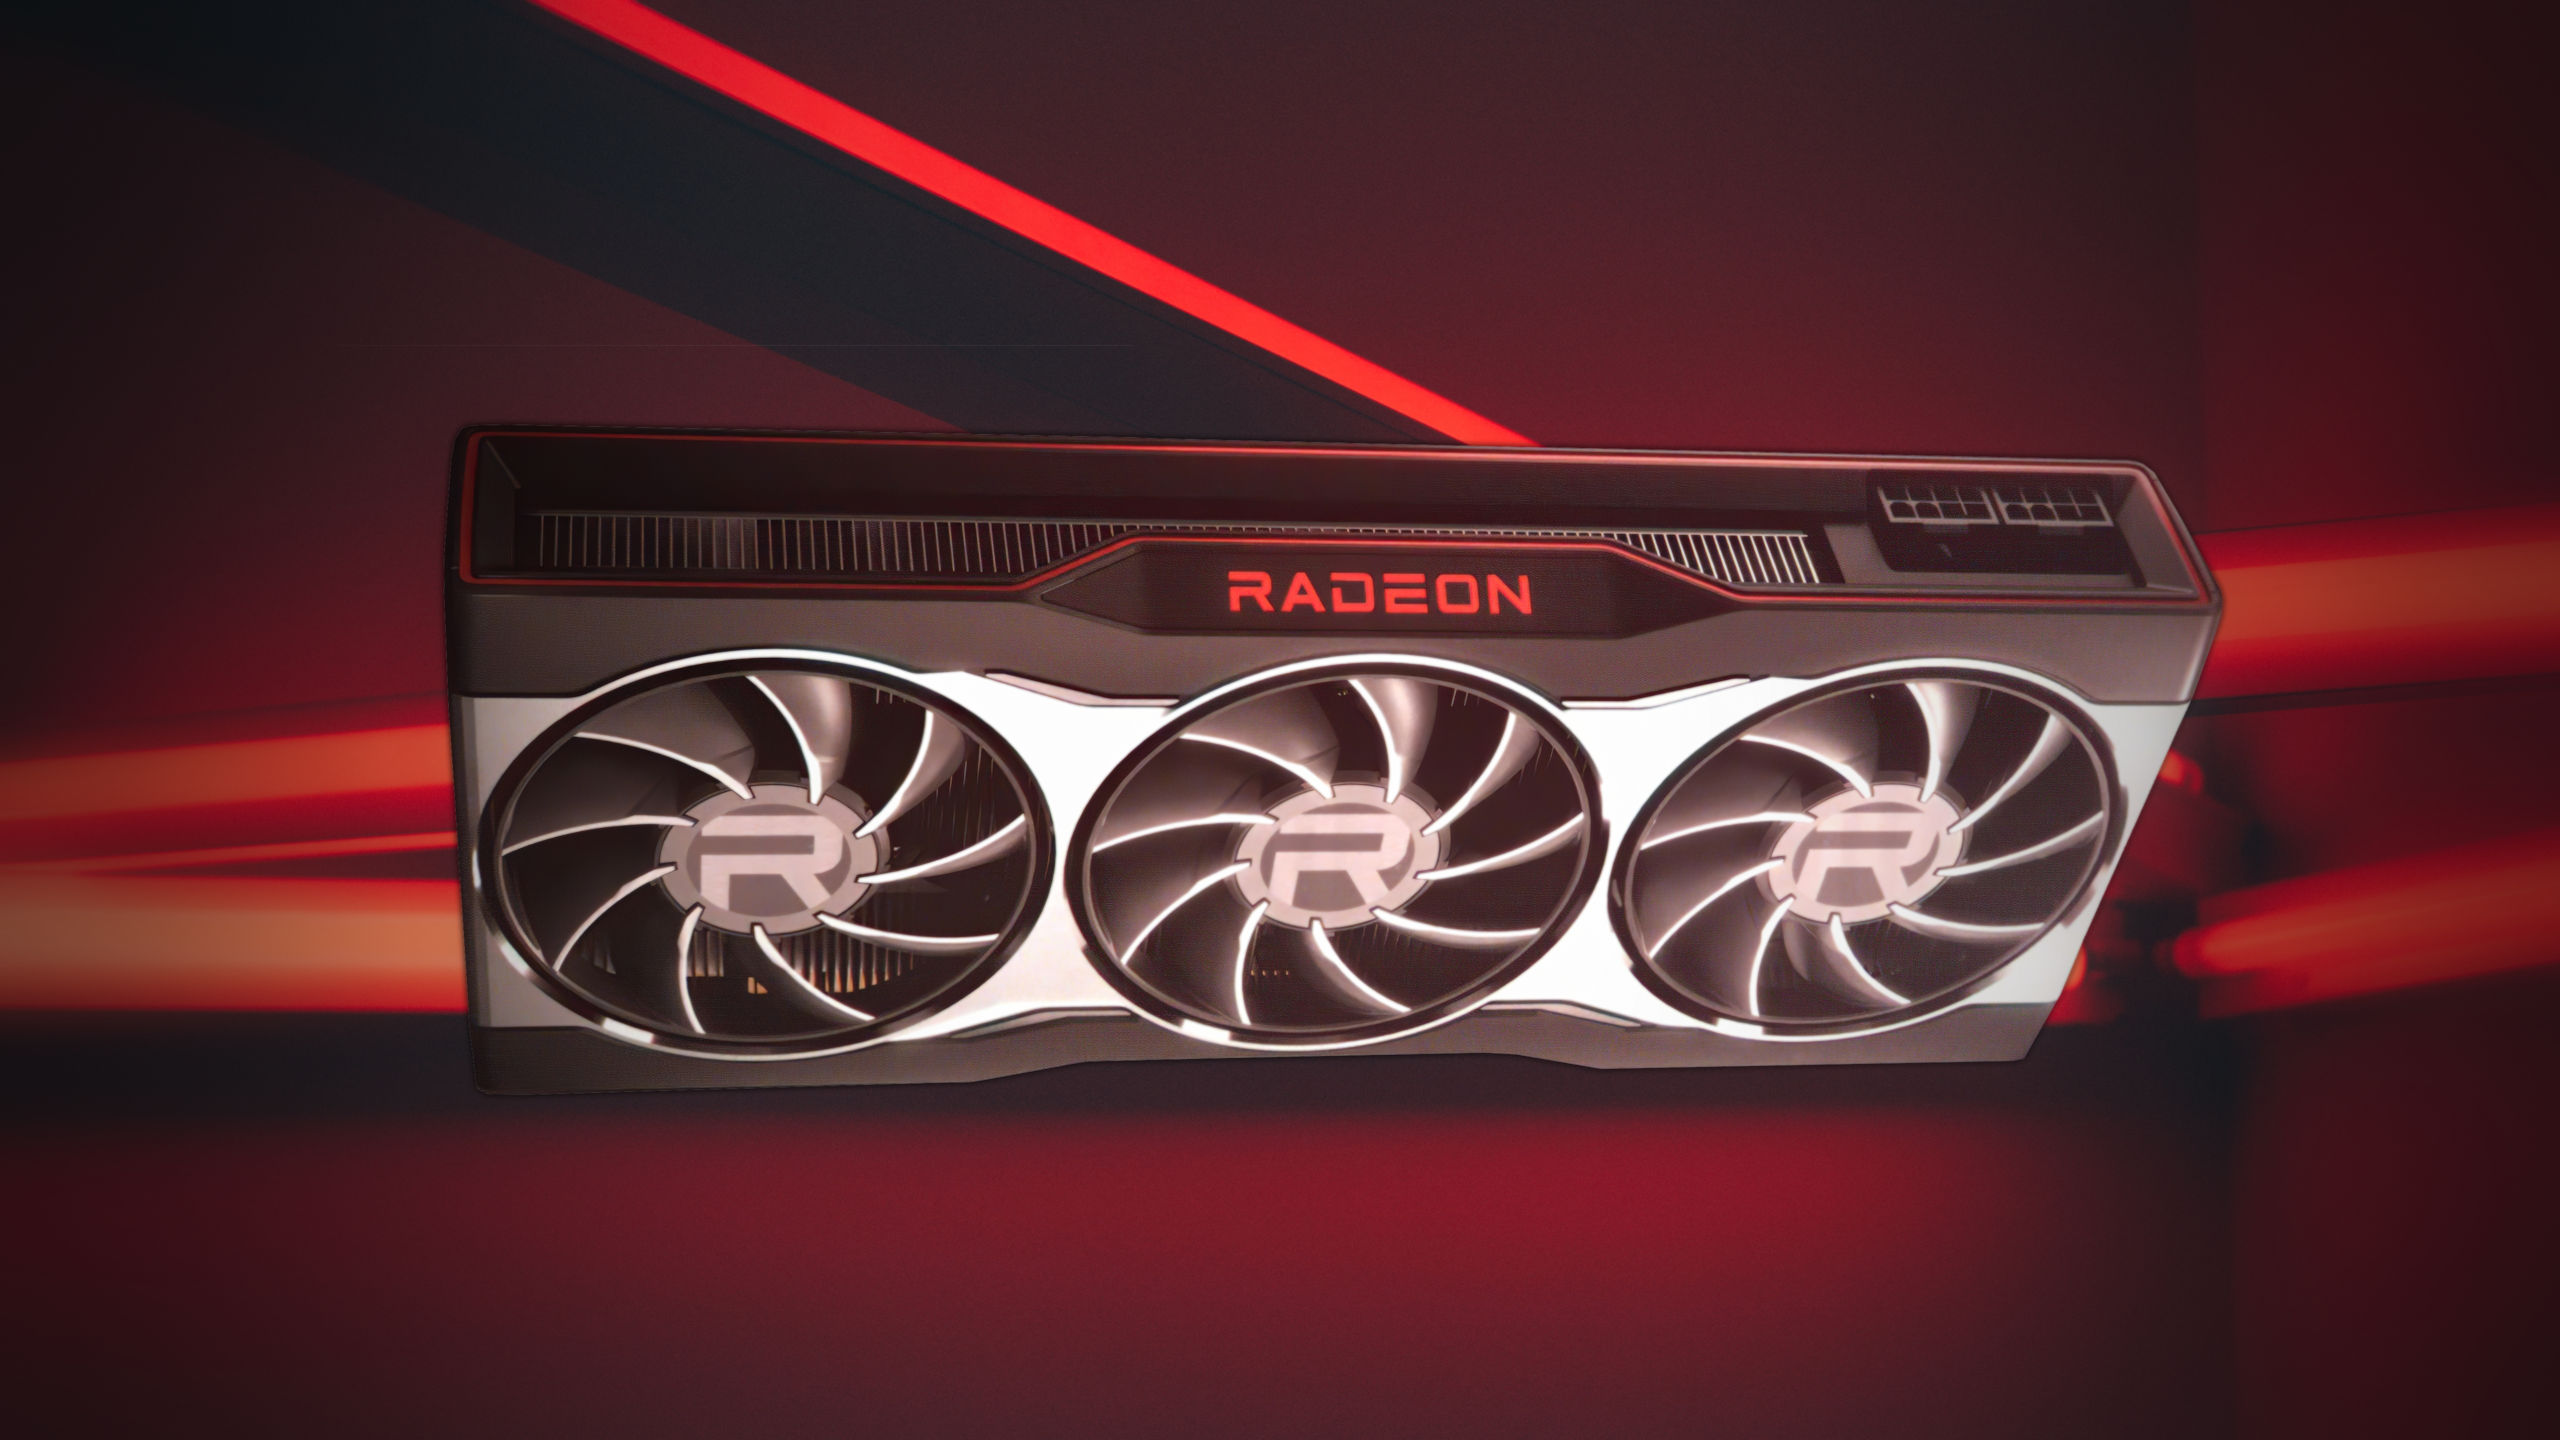 Tras el anuncio de la semana pasada del paquete AMD Radeon Raise the Game Bundle, AMD está ampliando la oferta para incluir el modelo